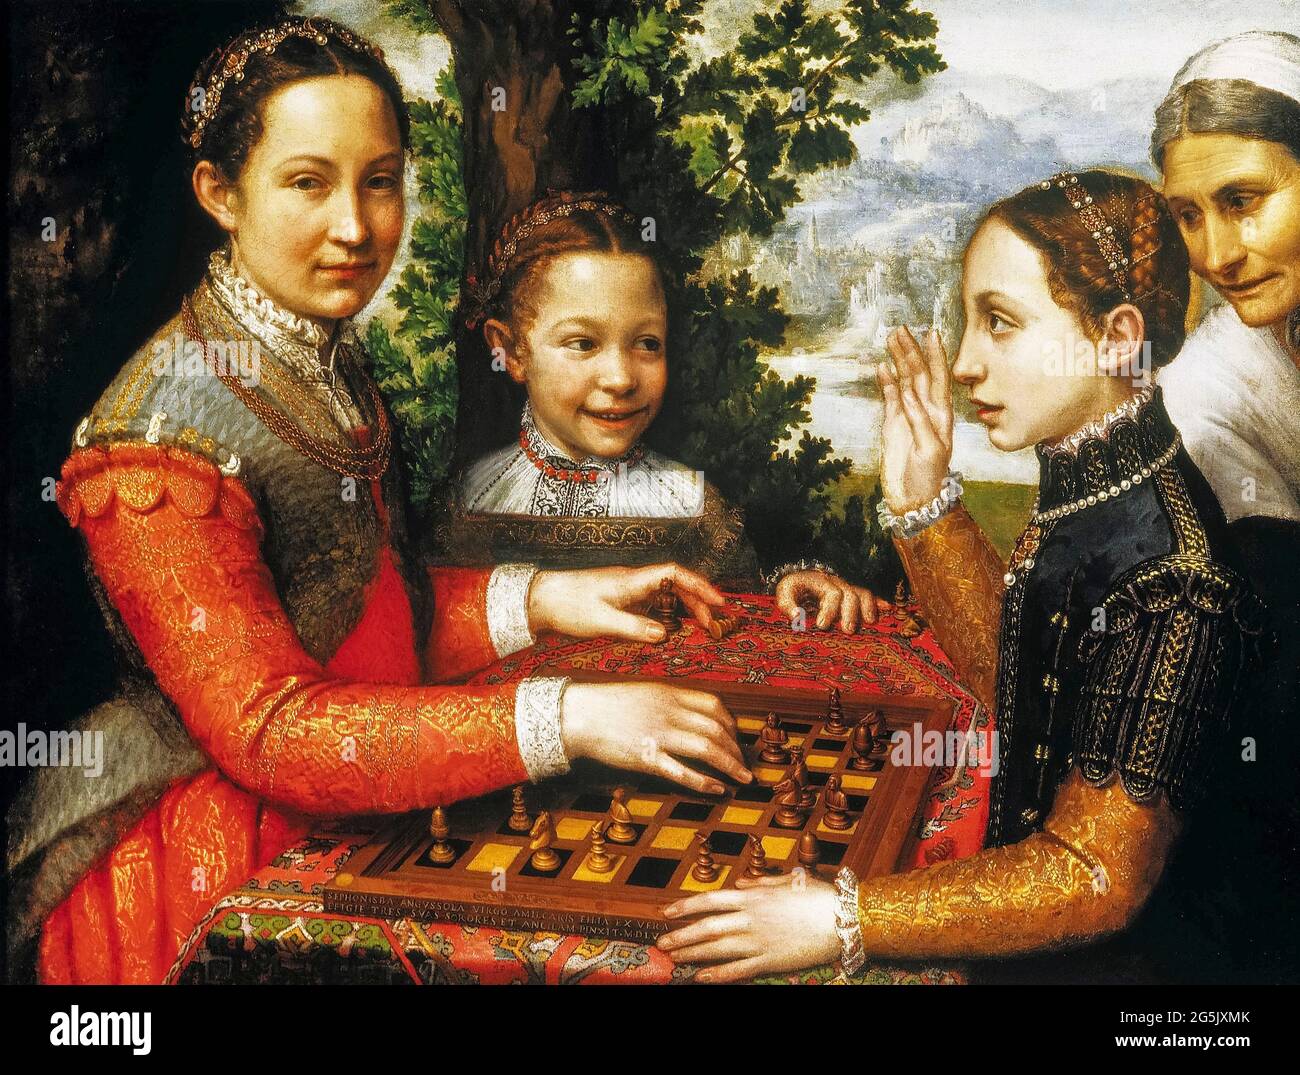 Sofonisba Anguissola, The Chess Game (les sœurs de l'artiste jouant des échecs), portrait painting, 1555 Banque D'Images